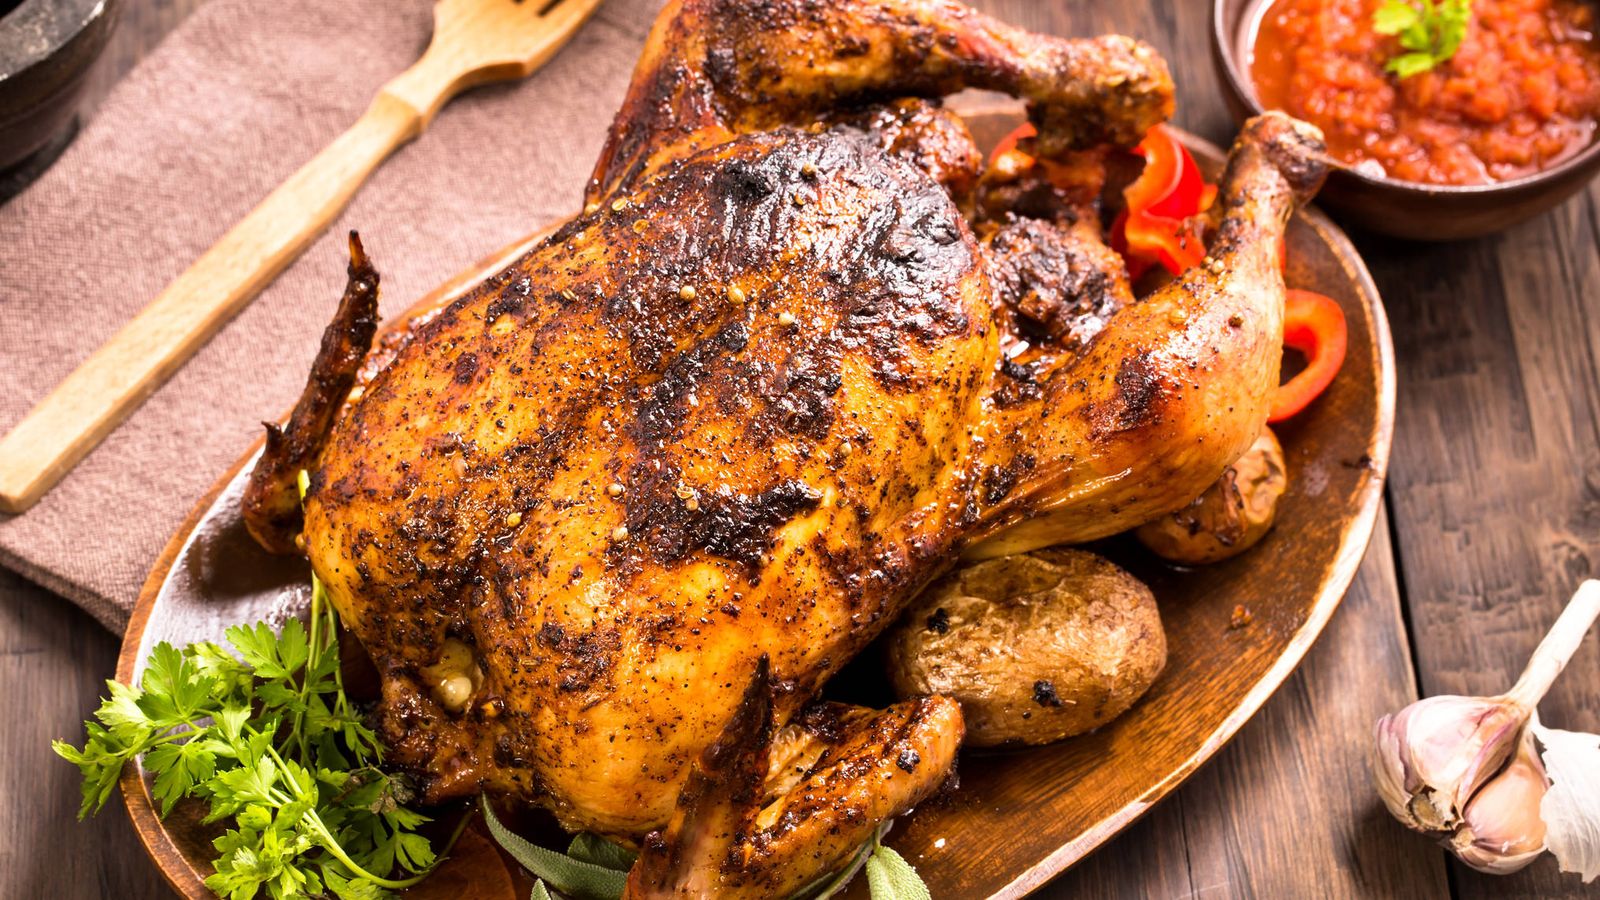 Foto: El pollo al horno es uno de los platos típicos de cualquier cocina. iStock